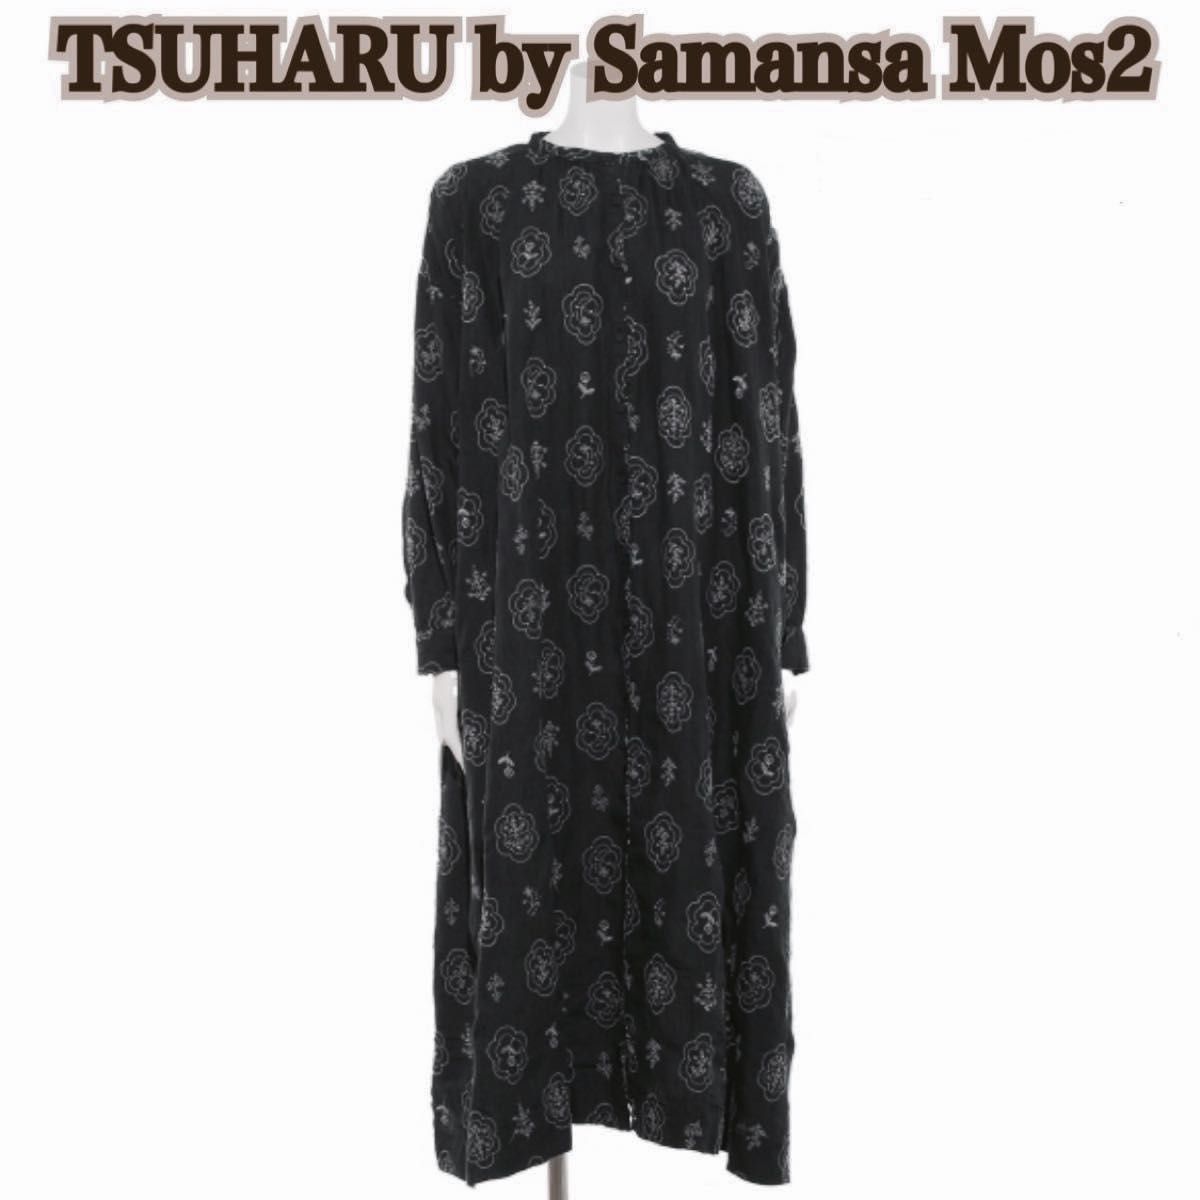 新品 ツハル tsuharu サマンサモスモス テーブルクロスワンピース ロングワンピース 刺繍 フラワー 花 チャコール SM2